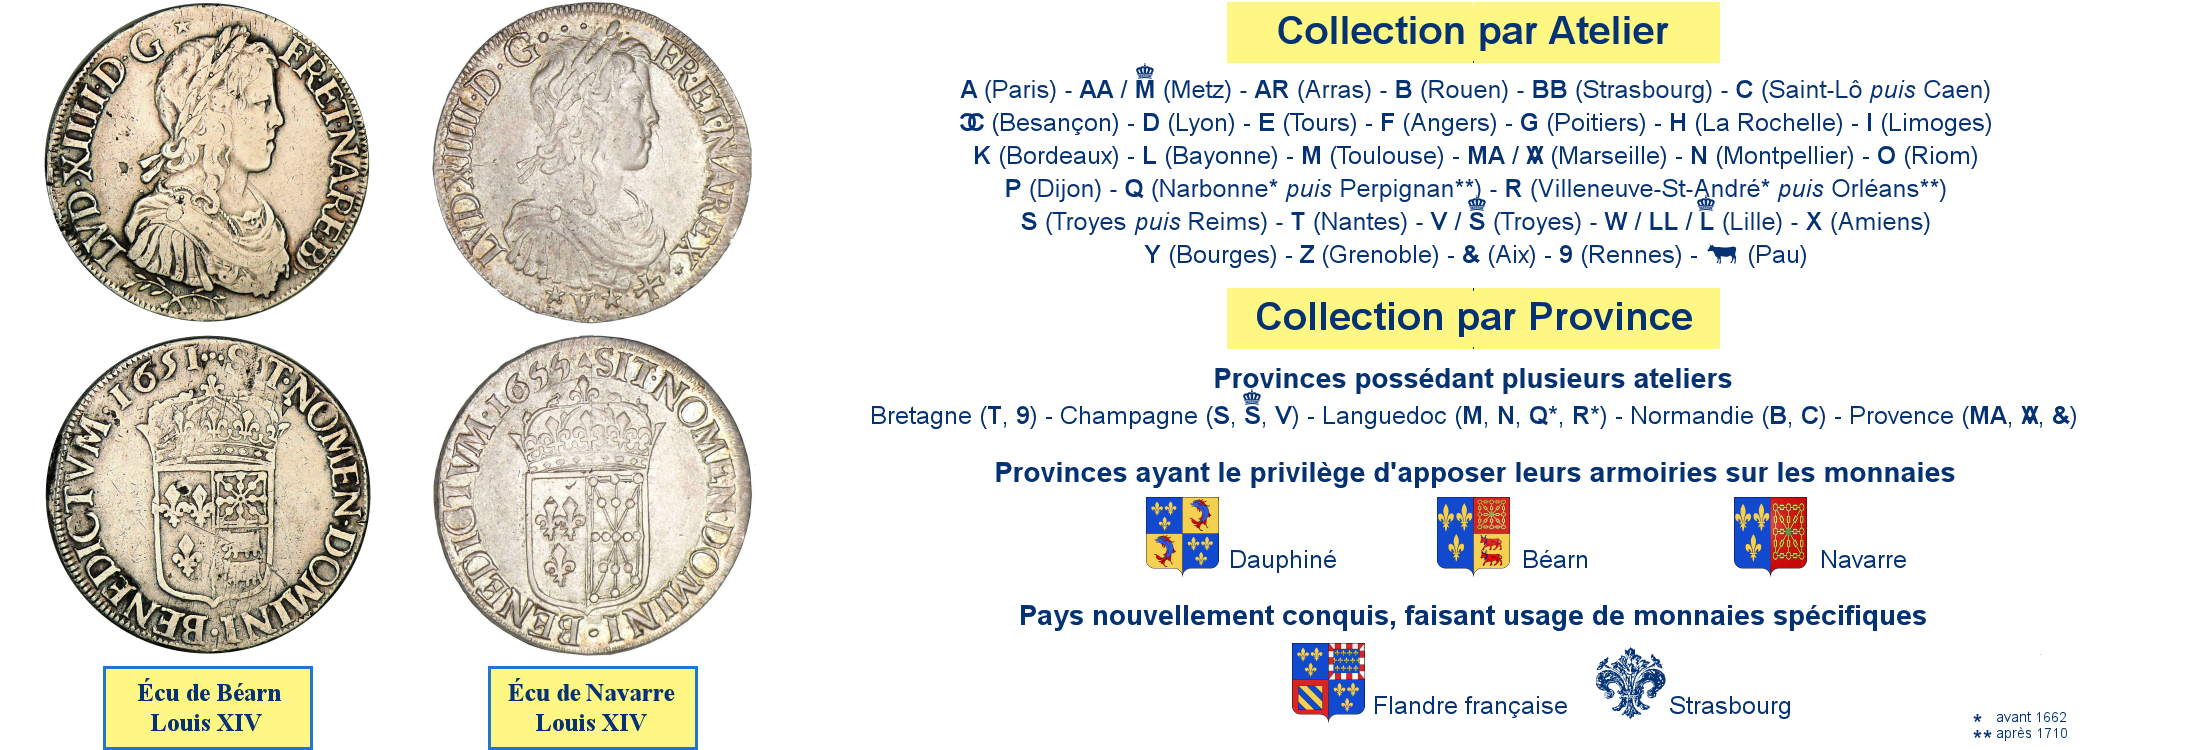 Photos de monnaies royales de Navarre et de Béarn